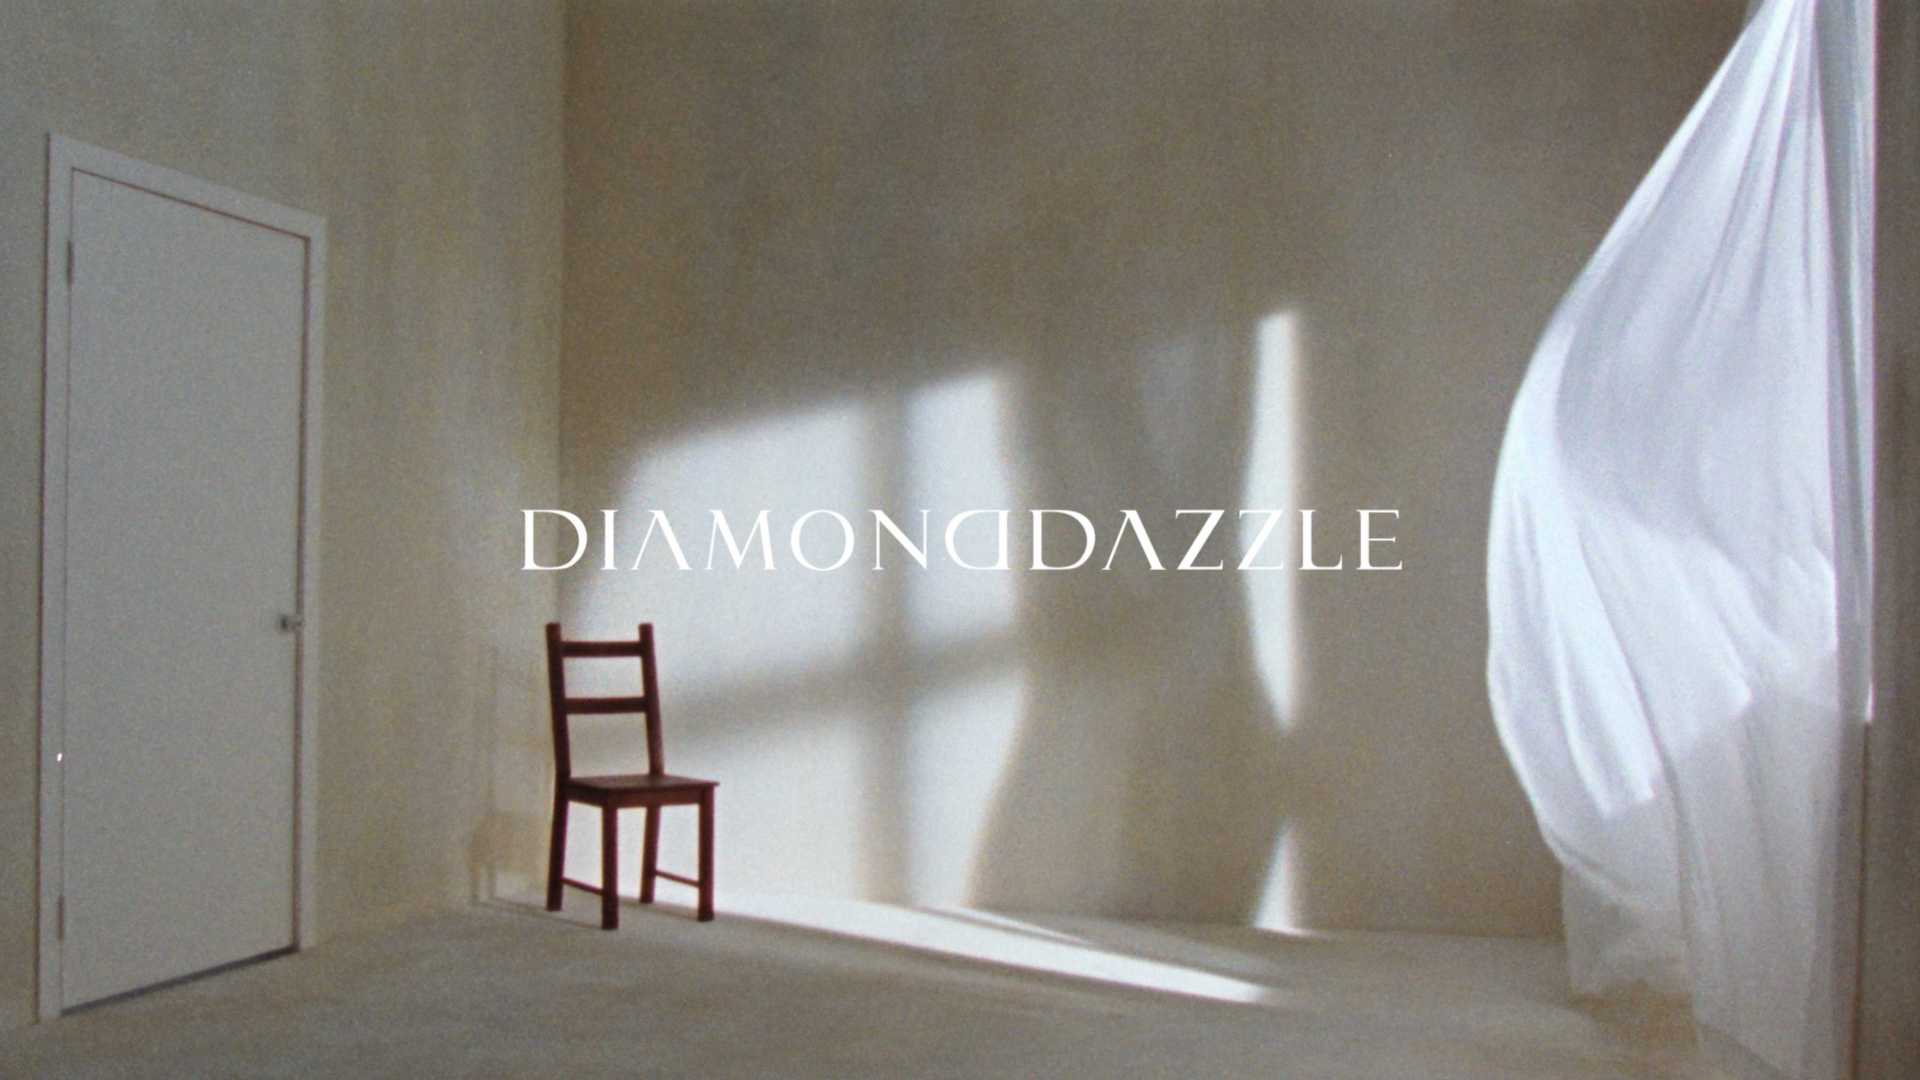 DIAMOND DAZZLE 2022